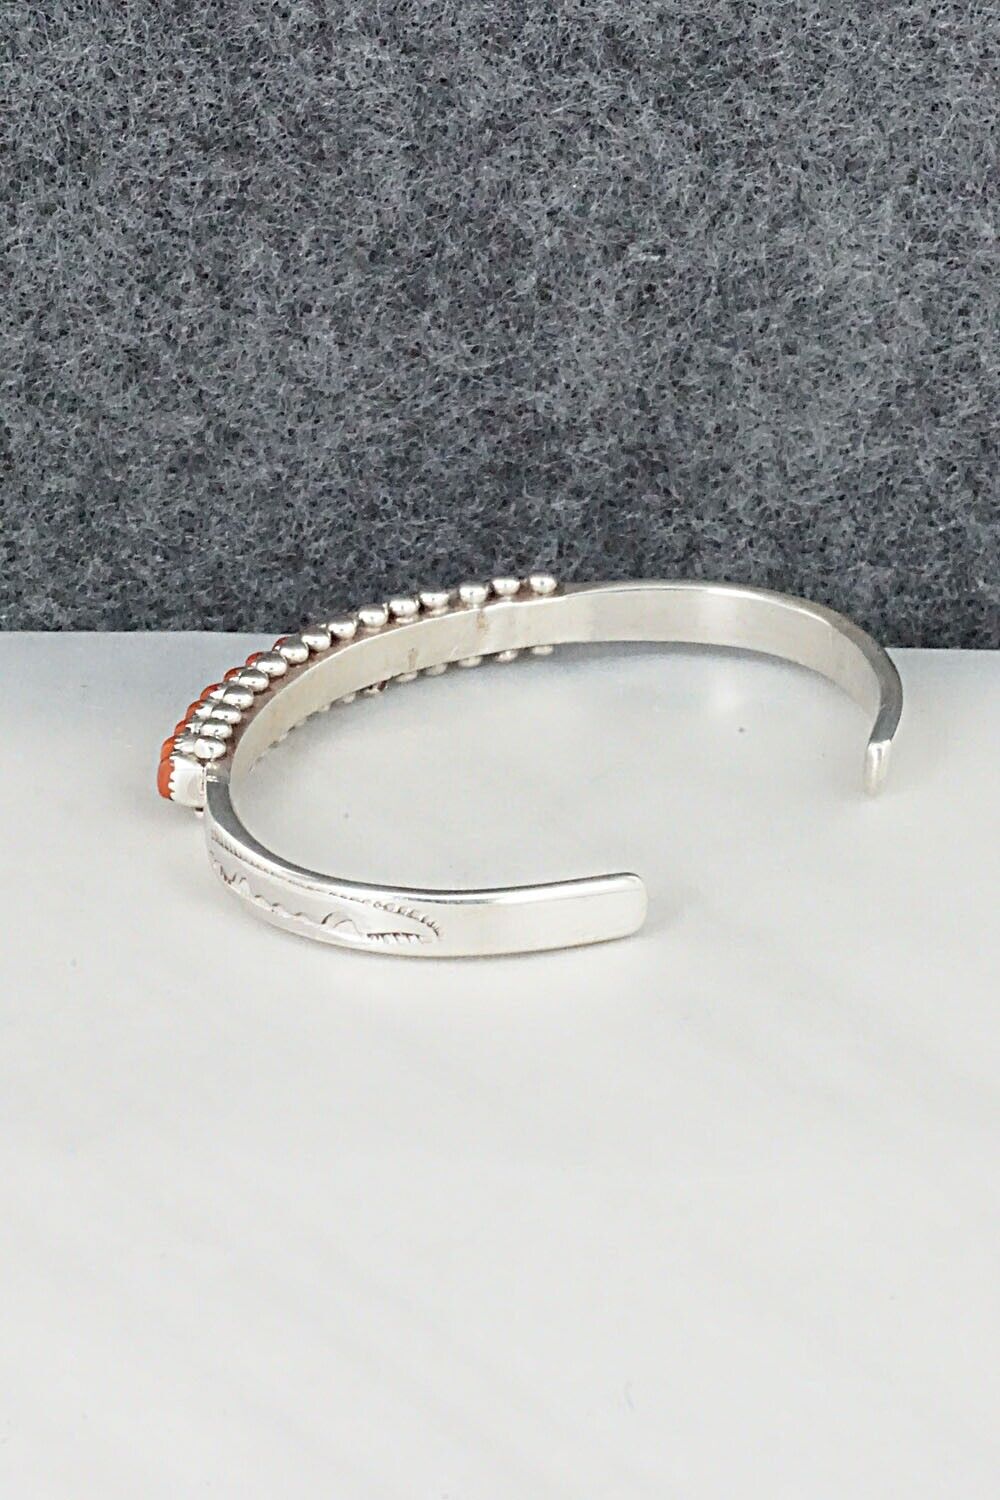 Coral & Sterling Silver Bracelet - Irma Unkestine